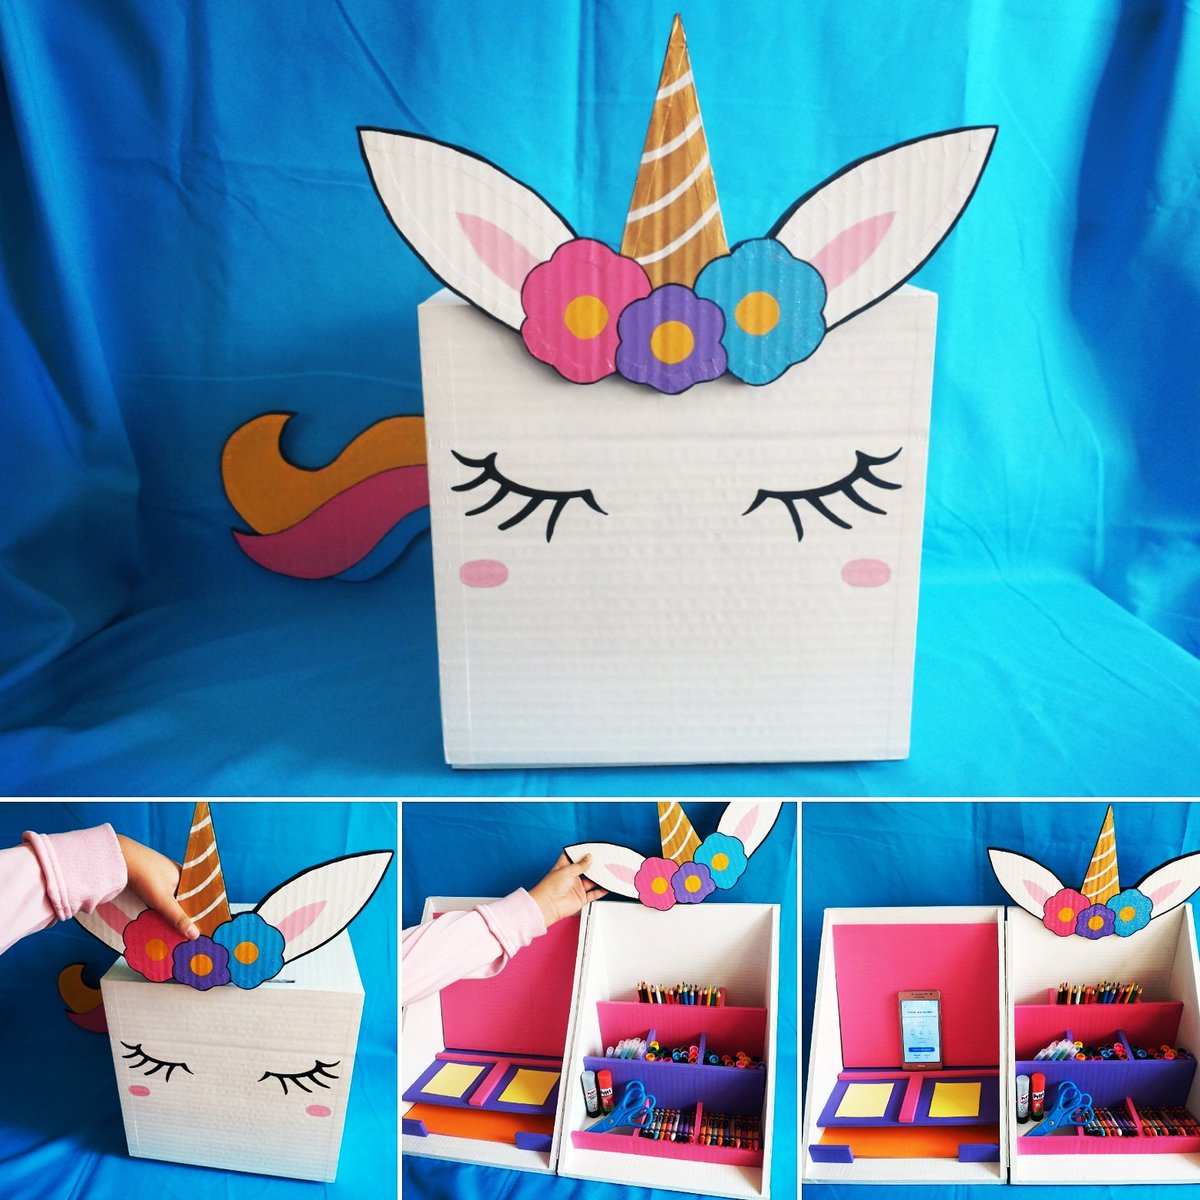 💡Imagina los útiles en este mágico y genial organizador de unicornio 🦄 🌈

#ideasyapjunior #ideas #creatividad #unicornio #magico #cuernavaca #regalosoriginales #ideaspararegalar #organizadores #carton #regalospersonalizados #crayola